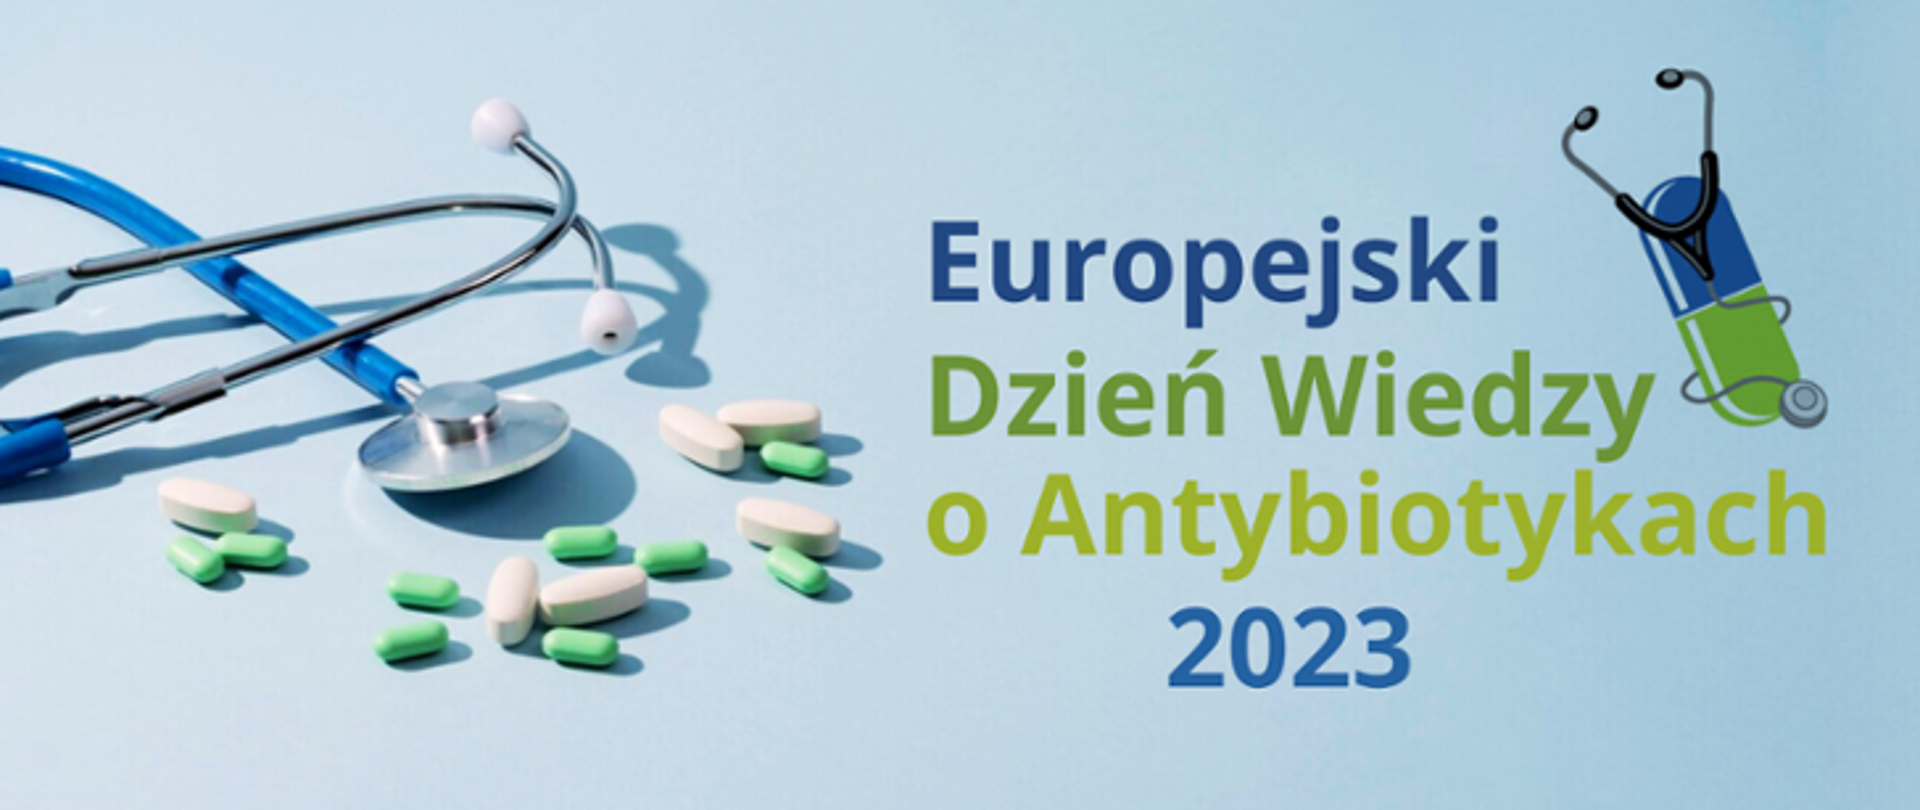 Europejski dzień wiedzy o antybiotykach - plakat